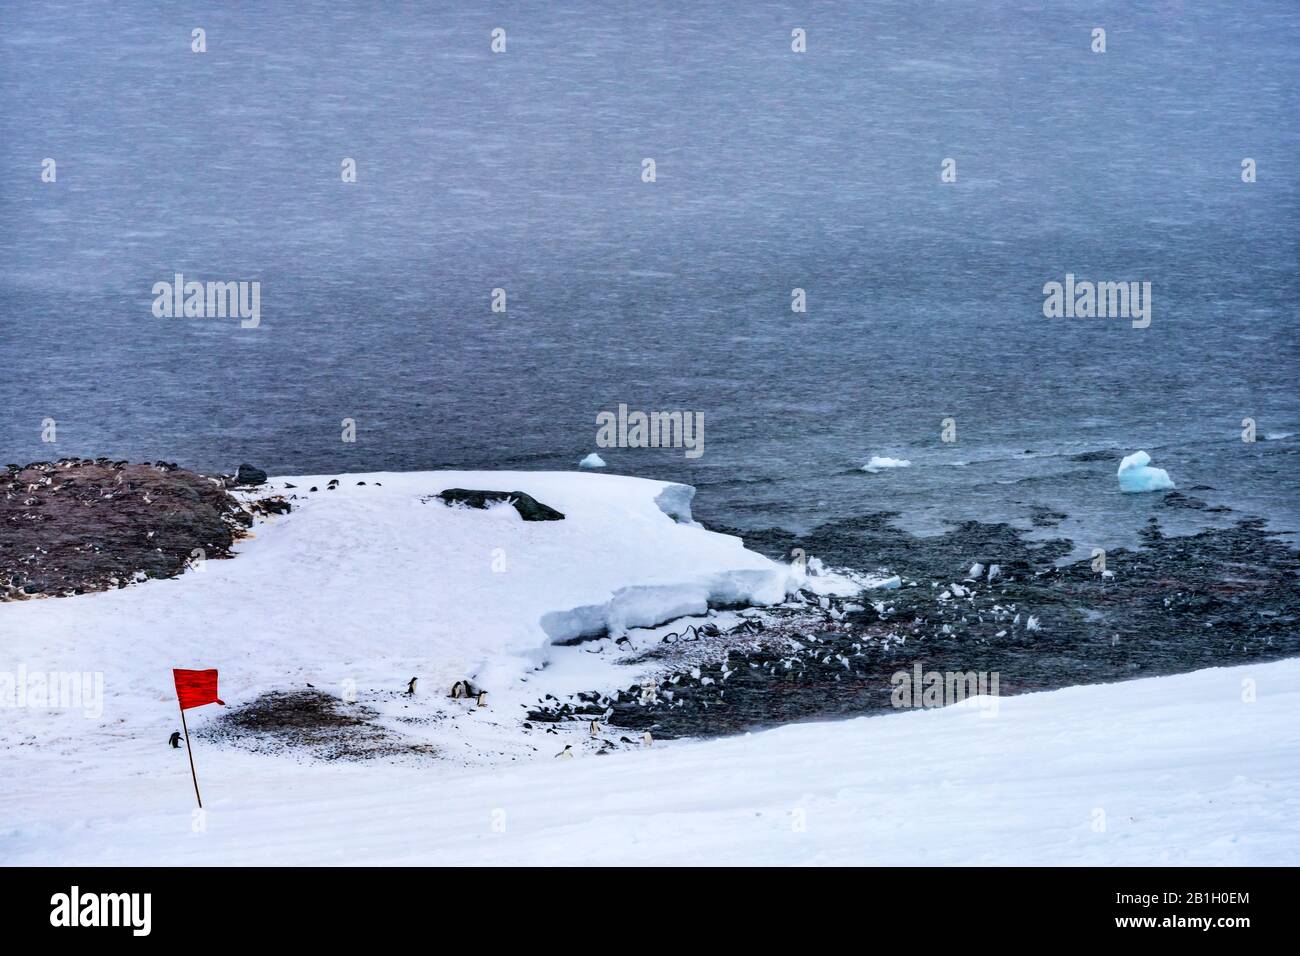 Neige Sur L'Autoroute Gentoo Penguins Tempête De Neige Dans Le Port De Mikkelsen Antarctique Péninsule Antarctique. Banque D'Images